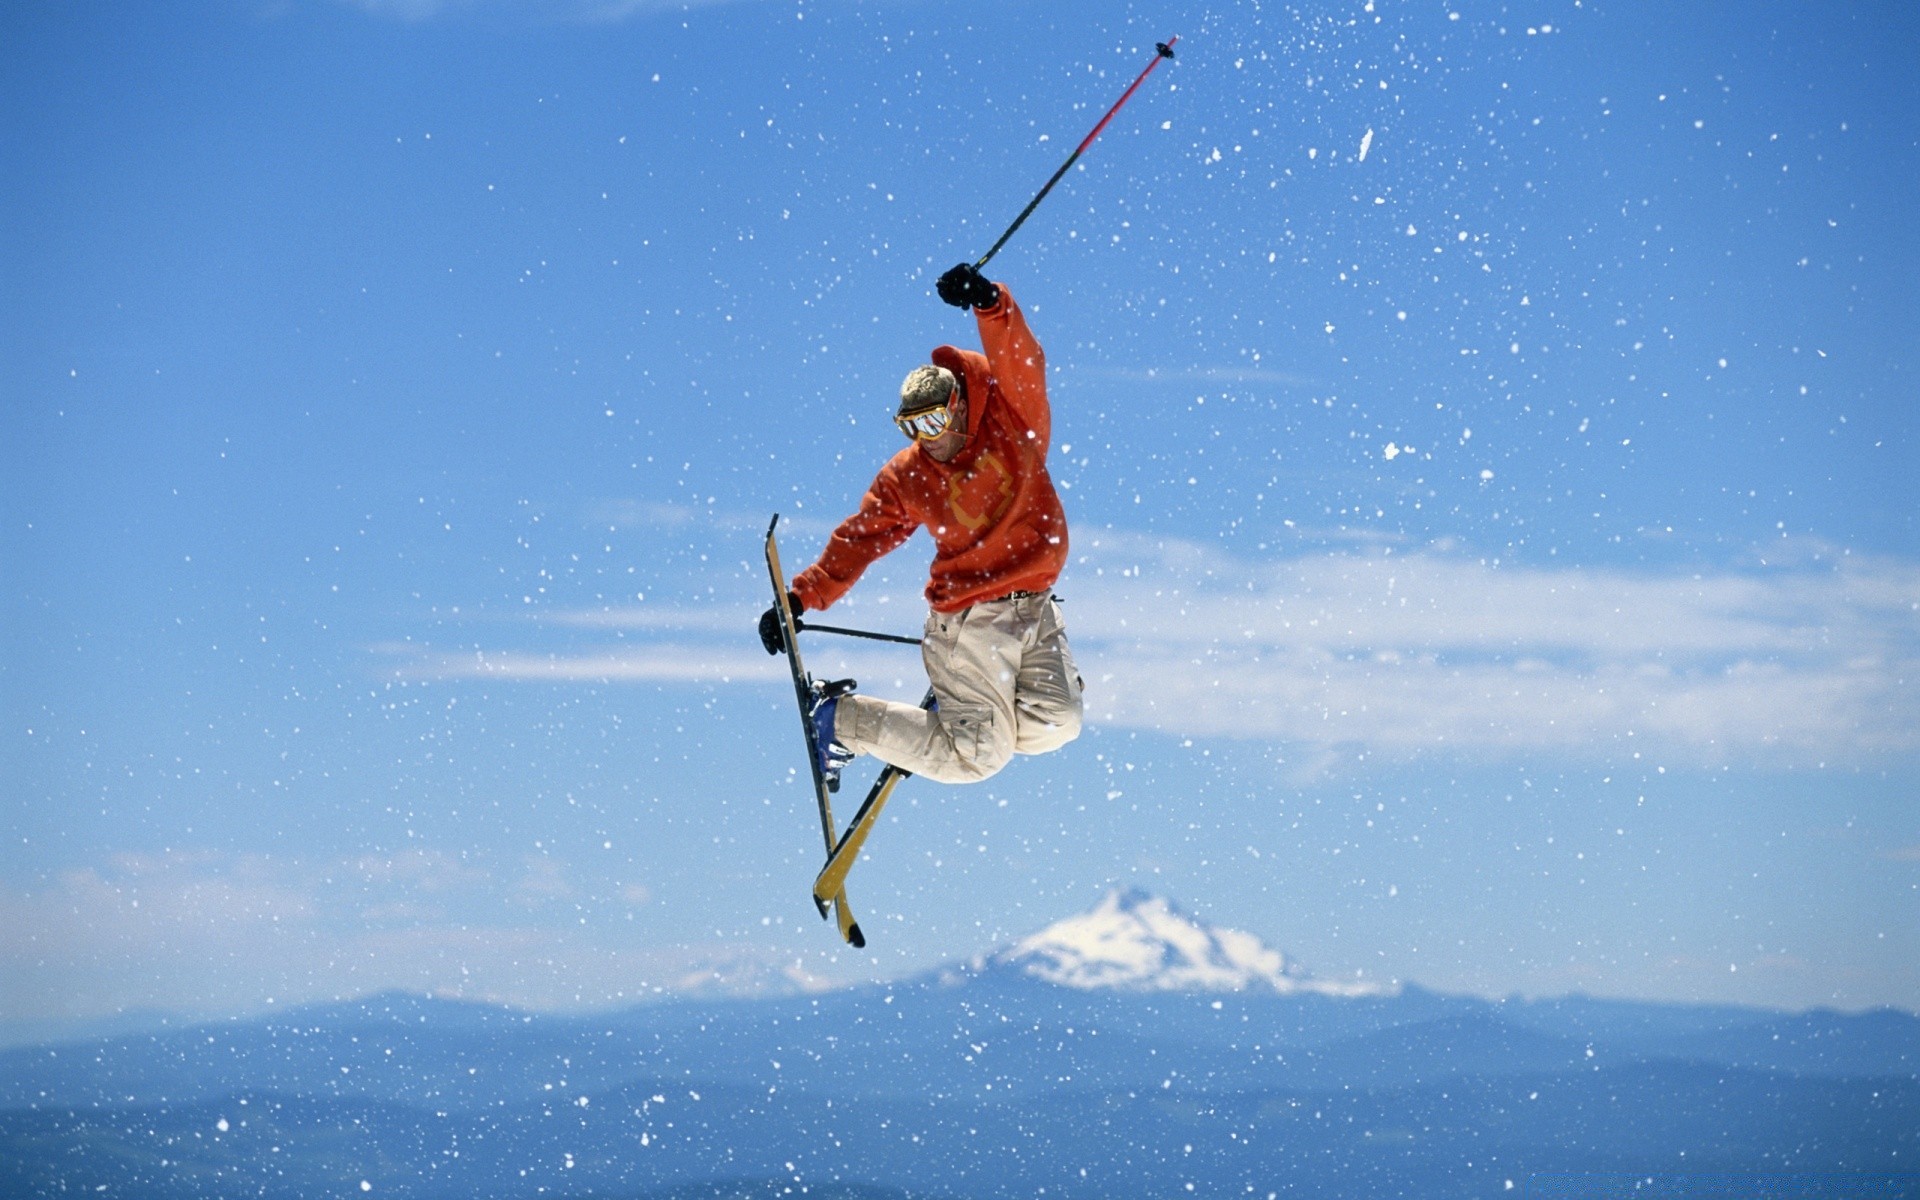 лыжи отдых один спортивное оборудование действие взрослый снег конкурс человек на открытом воздухе отдых удовольствие умение приключения